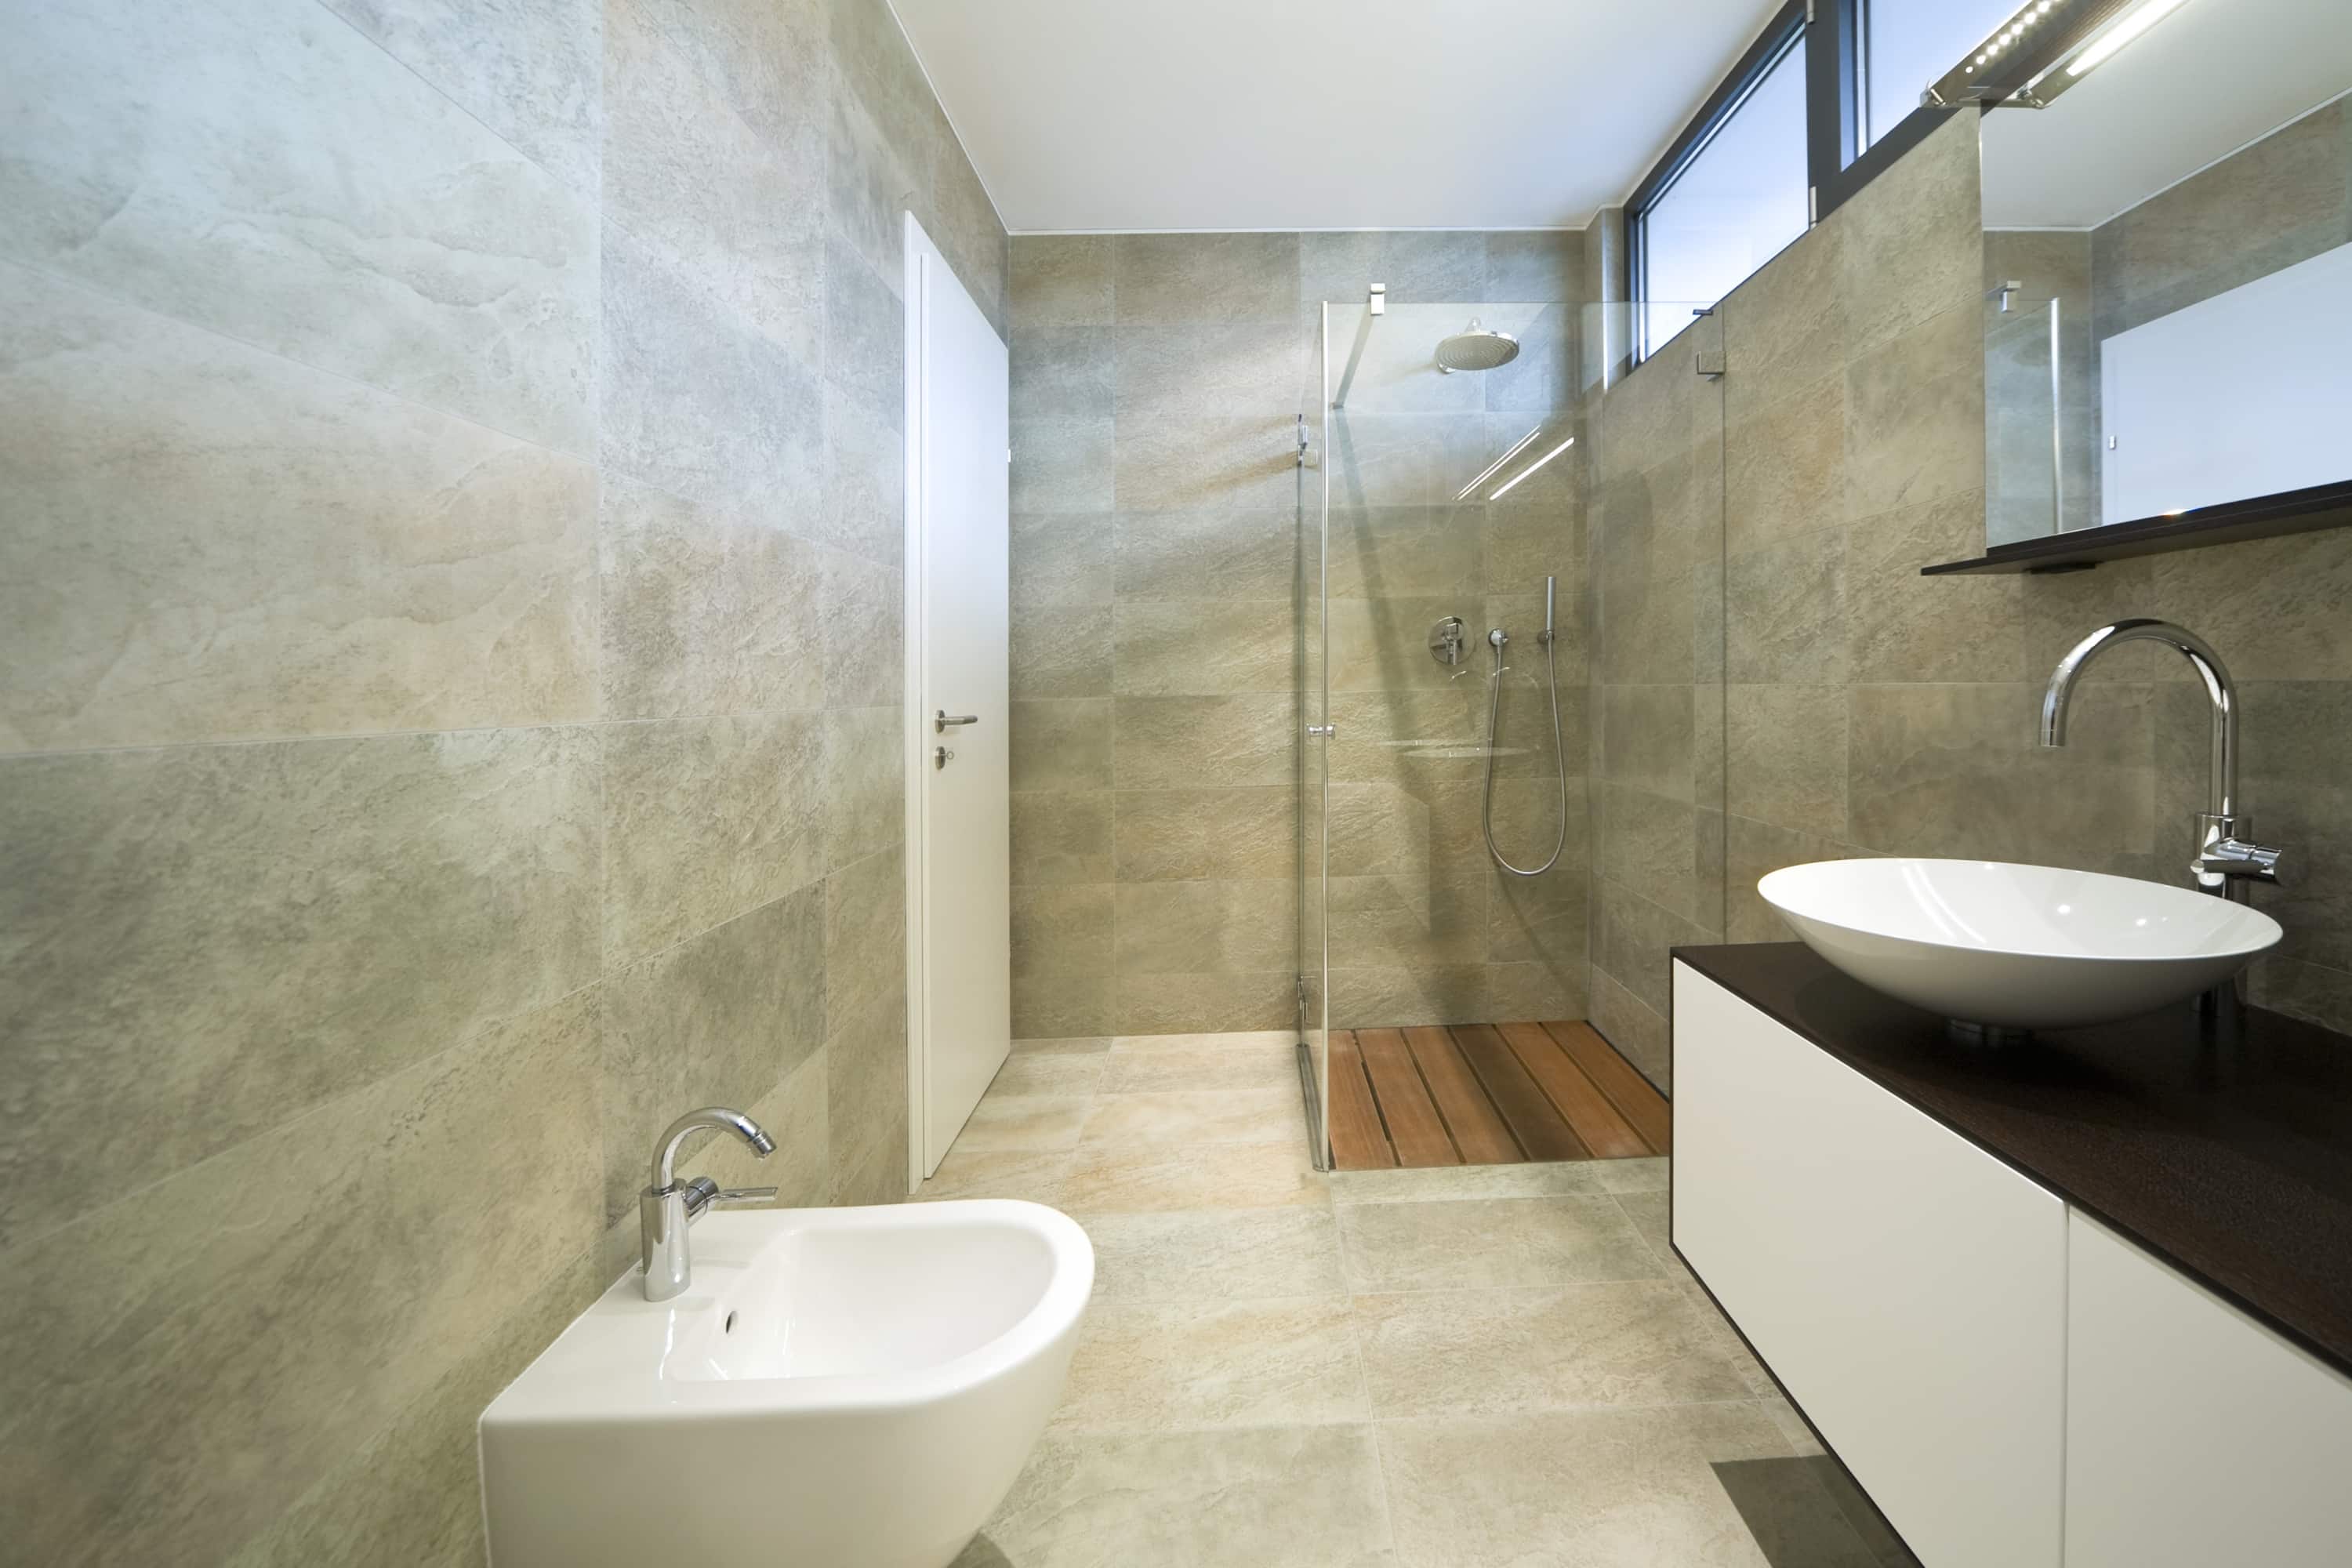 Vervreemden betalen Garantie Goedkope badkamer renovatie: 5 tips [+ prijzen]